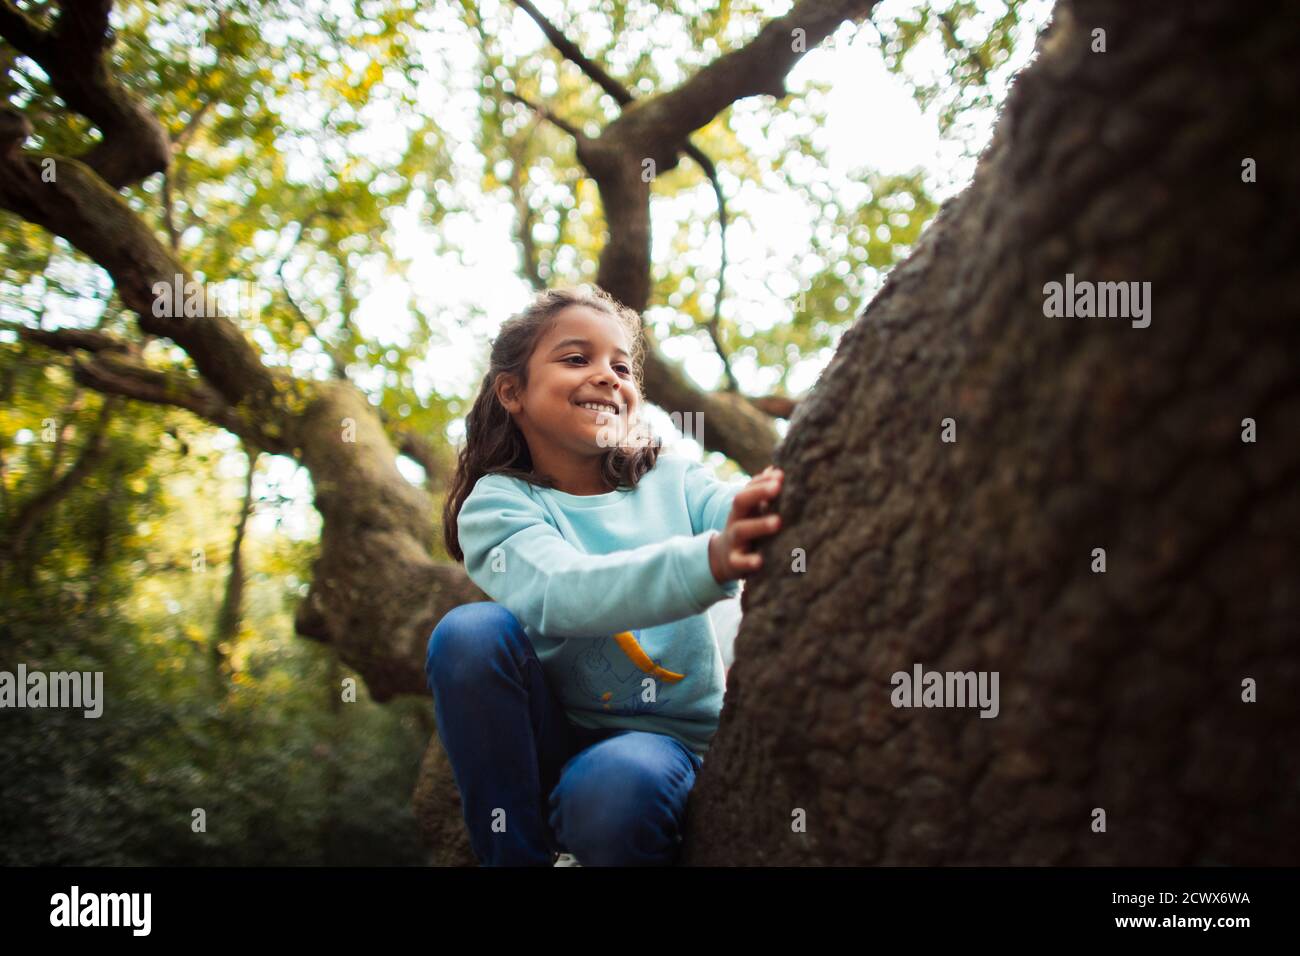 Happy girl climbing tree Stock Photo